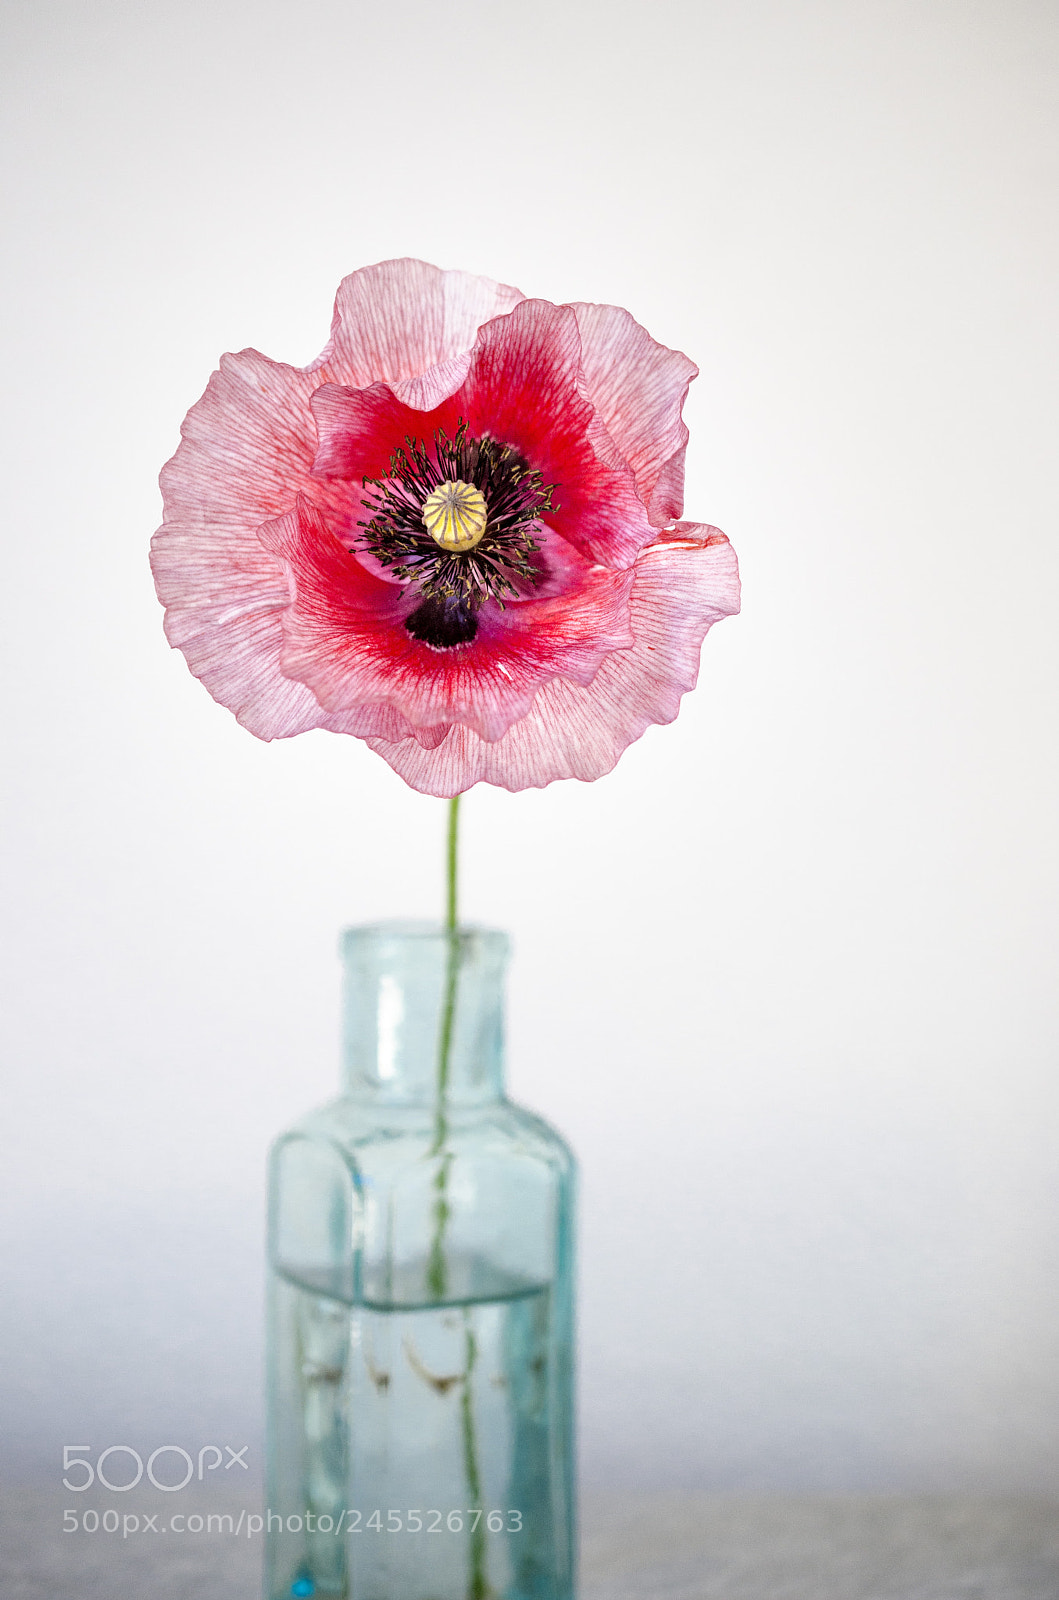 Nikon D7000 sample photo. Poppy in vase photography